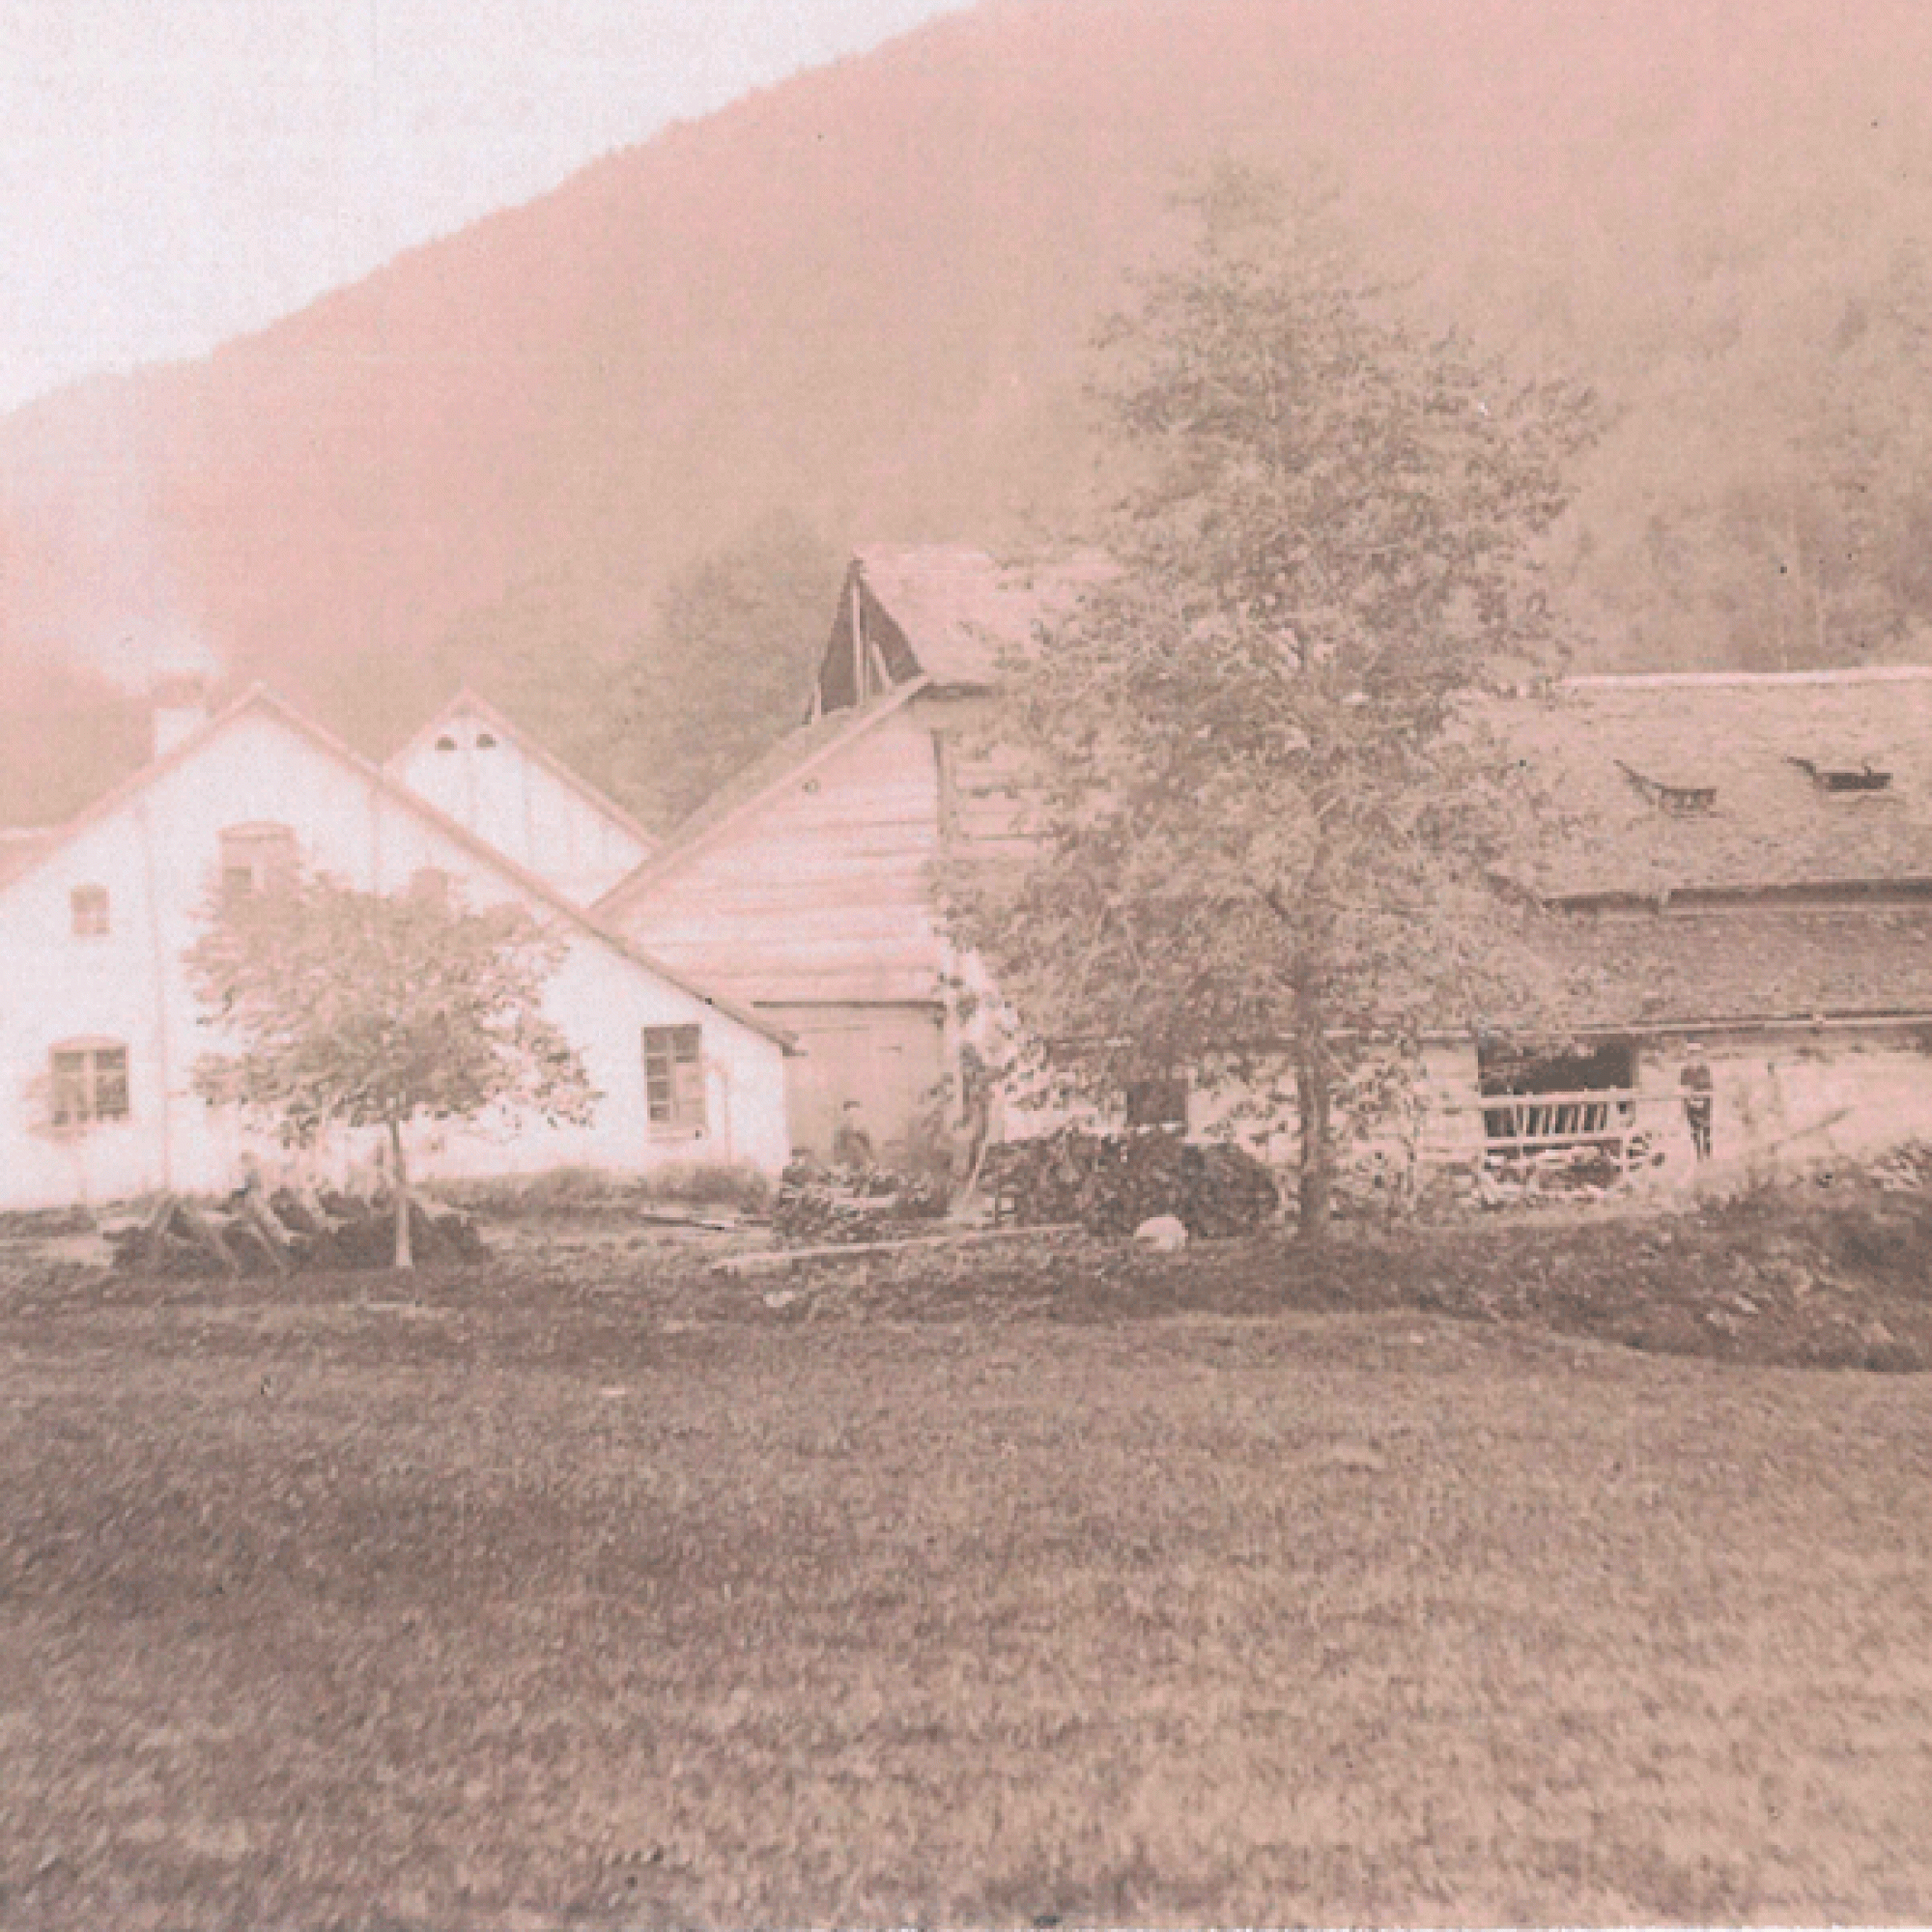 Der hölzerne Turmaufbau über dem steinernen Brennofen wurde anhand eines Fotos aus dem Jahr 1903 erbaut.